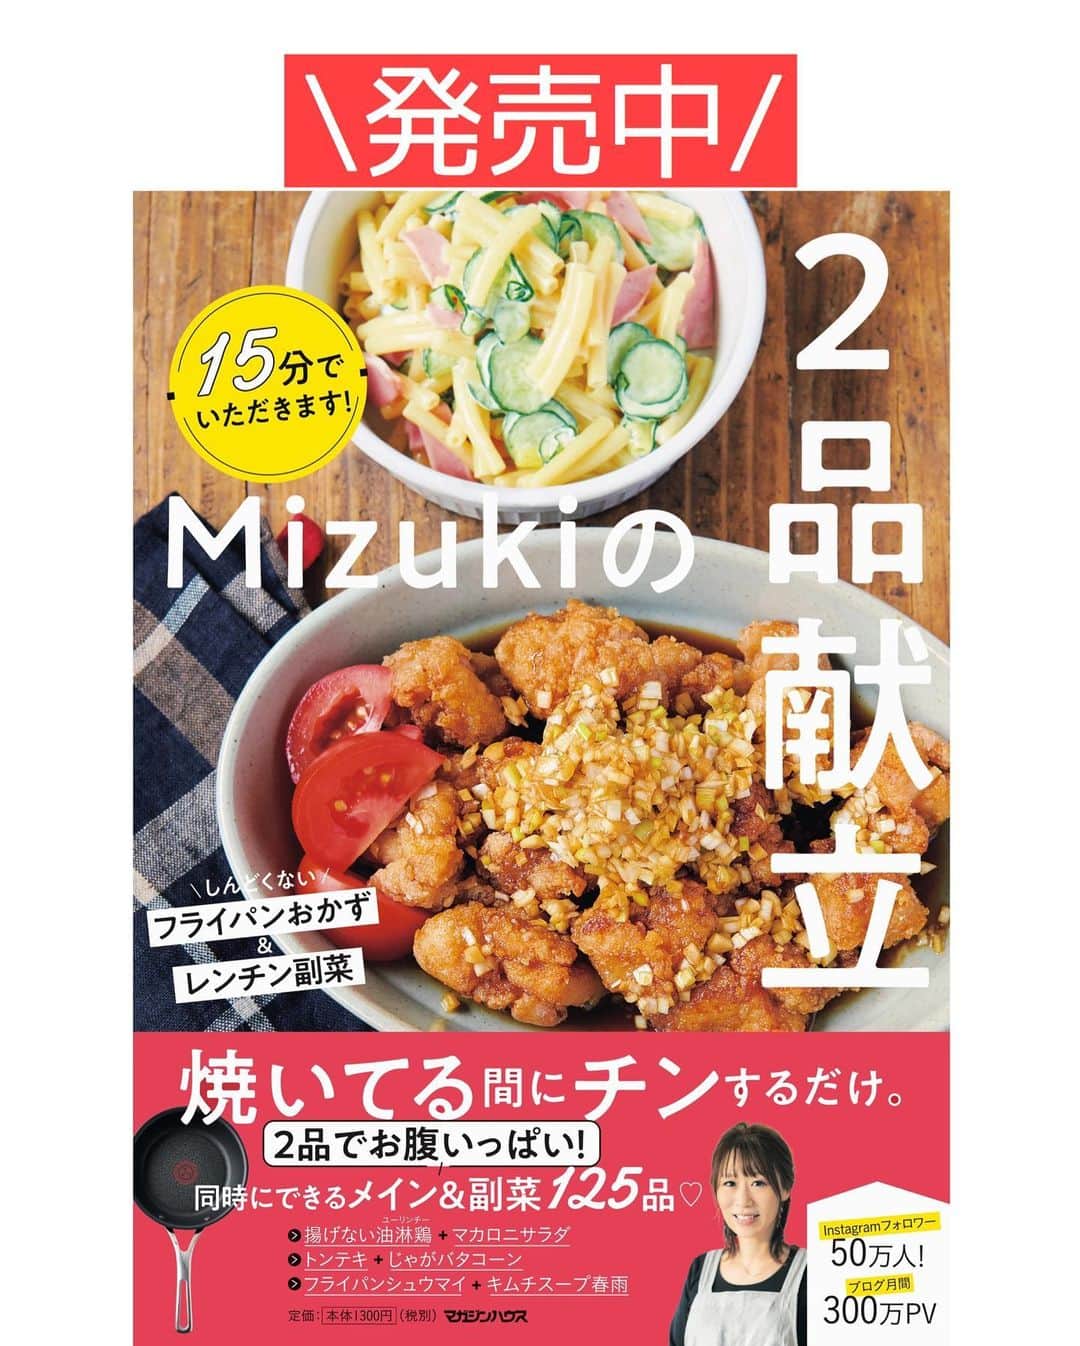 Mizuki【料理ブロガー・簡単レシピ】さんのインスタグラム写真 - (Mizuki【料理ブロガー・簡単レシピ】Instagram)「・﻿ 【#レシピ 】ーーーーーーーーー﻿ ♡鮭と長芋のバター醤油焼き♡﻿ (2品献立提案あり)﻿ ーーーーーーーーーーーーーーー﻿ ﻿ ﻿ ﻿ おはようございます(*^^*)﻿ ﻿ 今日はリクエストの多かった﻿ お魚レシピのご紹介です♩﻿ ﻿ お手軽な鮭の切り身と長芋を﻿ バター醤油で仕上げました♡﻿ どちらも同じくらいに火が通るので﻿ 同時に焼いてたれをからめるだけ！﻿ フライパンひとつで作れる﻿ 簡単時短レシピです(*´艸`)﻿ ﻿ 長芋が入ることで﻿ ボリュームも食べ応えも出ますよ♩﻿ よかったらお試し下さいね(*^^*)﻿ ﻿ ﻿ ﻿ ＿＿＿＿＿＿＿＿＿＿＿＿＿＿＿＿＿＿＿＿﻿ 【2人分】﻿ 生鮭...2切れ﻿ 塩こしょう...少々﻿ 薄力粉...適量﻿ 長芋...10cm(200g)﻿ しめじ...1/2袋﻿ サラダ油...大1﻿ ●醤油・みりん...各大1﻿ ●バター...10g﻿ (あれば)パセリ...適量﻿ ﻿ 1.鮭は一口大に切り、塩こしょうを振って薄力粉をまぶす。長芋は皮を剥いて1cm厚さの輪切りにする。しめじはほぐす。﻿ 2.フライパンにサラダ油を中火で熱し、鮭と長芋を焼く。焼き色がついたら裏返し、裏面も焼いて火を通す。﻿ 3.しめじを加えて炒め合わせ、●を加えて煮からめる。器に盛り、パセリを振る。﻿ ￣￣￣￣￣￣￣￣￣￣￣￣￣￣￣￣￣￣￣￣﻿ ﻿ ﻿ ﻿ 《ポイント》﻿ ♦︎サーモンで作っても美味しいです♩﻿ ♦︎直径26cmのフライパンを使用しています♩﻿ ﻿ ﻿ ﻿ ﻿ ﻿ ﻿ ＿＿＿＿＿＿＿＿＿＿＿＿＿＿＿＿﻿ 🥣🥣🥣 2品献立提案 🥣🥣🥣﻿ ￣￣￣￣￣￣￣￣￣￣￣￣￣￣￣￣﻿ 【合間に作れるおすすめ副菜】﻿ >豚ニラもやしスープ(P.31)﻿ >キムチスープ春雨(P.25)﻿ (#Mizukiの2品献立 より)﻿ ﻿ 【献立の段取り】﻿ どちらもレンジで作れるスープ♩﻿ スープをレンジにかけてから﻿ メインを焼いて下さい🥢﻿ ￣￣￣￣￣￣￣￣￣￣￣￣￣￣￣￣￣﻿ ﻿ ﻿ ﻿ ﻿ ﻿ ﻿ ⭐️発売中⭐️3刷重版が決まりました😭﻿ 本当にありがとうございます(涙)﻿ _____________________________________﻿ \15分でいただきます/﻿ 📕#Mizukiの2品献立 📕﻿ (9月24日発売・マガジンハウス)﻿ ￣￣￣￣￣￣￣￣￣￣￣￣￣￣￣￣￣﻿ ﻿ 忙しい私たちには﻿ 2品くらいがちょうどいい！﻿ 『しんどくない献立、考えました』﻿ ￣￣￣￣￣￣￣￣￣￣￣￣￣￣￣￣﻿ ﻿ ーーーーーPART.1 ーーーーー﻿ 【Mizukiのお墨つき！２品献立ベスト10】﻿ 約15分でできる10献立をご紹介！﻿ メインは全部フライパン、副菜はレンチンor混ぜるだけ♡﻿ ﻿ ーーーーーPART.2 ーーーーー﻿ 【フライパンひとつ！今夜のメインおかず】﻿ 献立の主役になる肉や魚のおかず50品！﻿ Part3の副菜と組み合わせれば﻿ 献立のバリエーションが広がりますよ♩﻿ ﻿ ーーーーー PART.3 ーーーーー﻿ 【合間に作れる！ 野菜別かんたん副菜】﻿ レンチンor和えるだけの副菜レシピを﻿ 素材別にたっぷり収録♩﻿ ﻿ ーーーーー番外編ーーーーー﻿ 【ひとつで満足！ご飯＆麺】﻿ 【具だくさん！おかずスープ】﻿ 【オーブンいらずのおやつレシピ】﻿ ￣￣￣￣￣￣￣￣￣￣￣￣￣￣￣￣￣￣﻿ (ハイライトにリンク🔗あります💗)﻿ ﻿ ﻿ ﻿ ﻿ ＿＿＿＿＿＿＿＿＿＿＿＿＿＿＿＿＿＿﻿ レシピを作って下さった際や﻿ レシピ本についてのご投稿には﻿ タグ付け( @mizuki_31cafe )して﻿ お知らせいただけると嬉しいです😊💕﻿ ￣￣￣￣￣￣￣￣￣￣￣￣￣￣￣￣￣￣﻿ ﻿ ﻿ ﻿ ﻿ #鮭#長芋#バター醤油#魚#フライパン#Mizuki#簡単レシピ#時短レシピ#節約レシピ#料理#フーディーテーブル#マカロニメイト#おうちごはん#デリスタグラマー#料理好きな人と繋がりたい#食べ物#料理記録#おうちごはんlover#写真好きな人と繋がりたい#foodpic#cooking#recipe#lin_stagrammer#foodporn#yummy#f52grams#鮭と長芋のバター醤油焼きm」11月13日 7時01分 - mizuki_31cafe